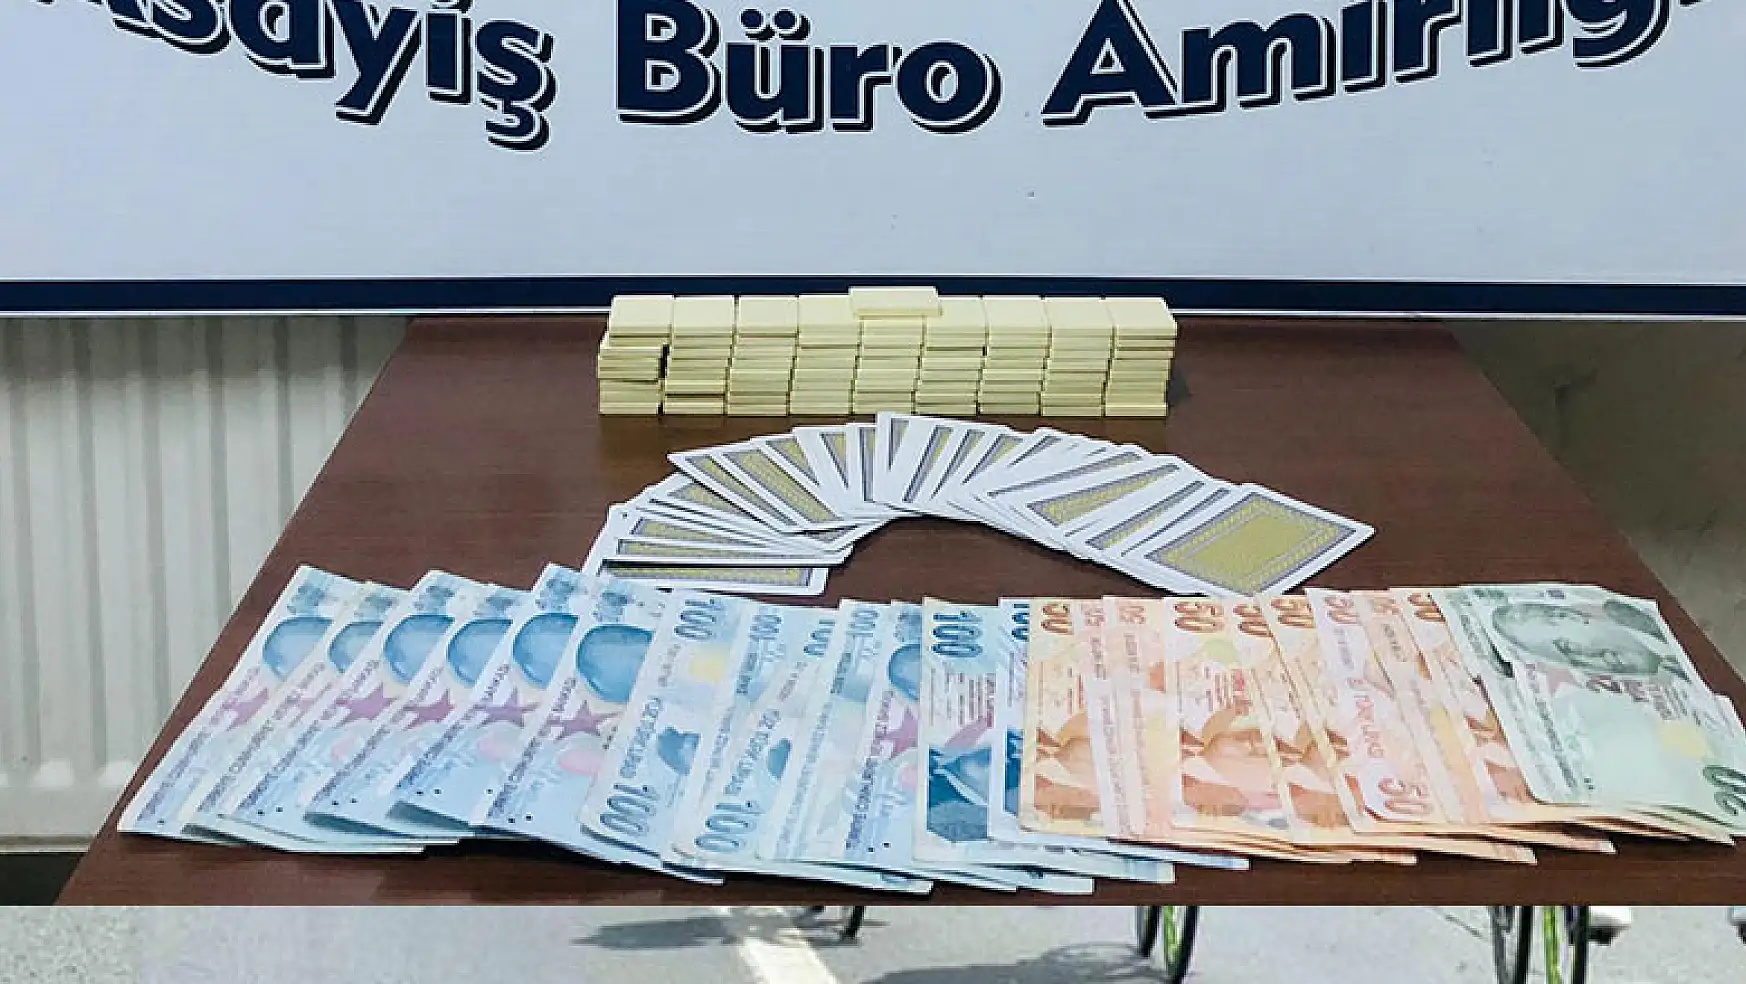 Konya'da kahvehanede kumar oynayan 5 kişiye para cezası